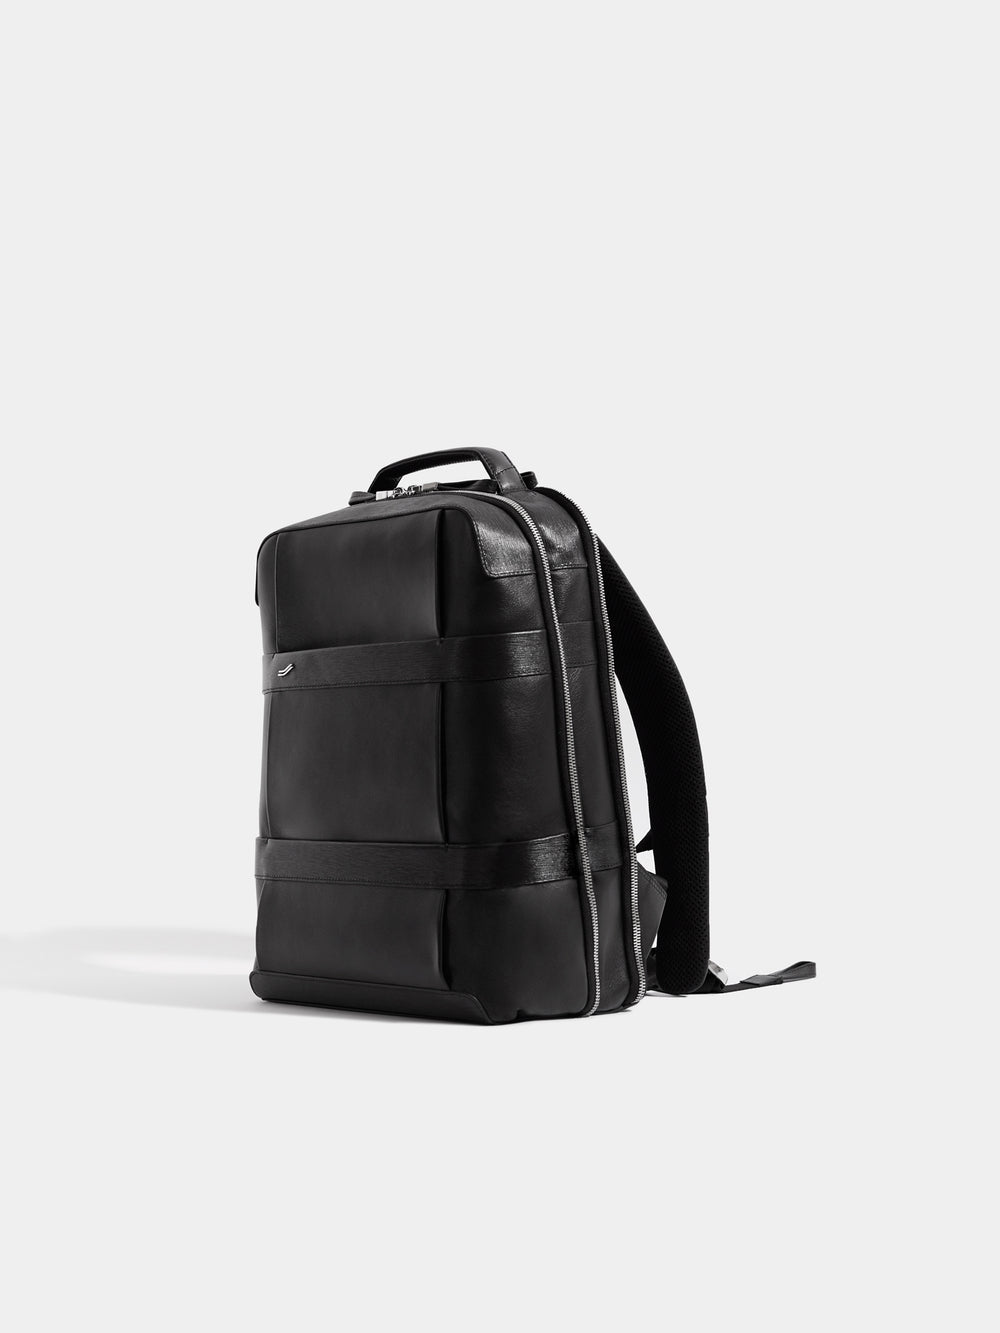 vantage black leather backpack rucksack